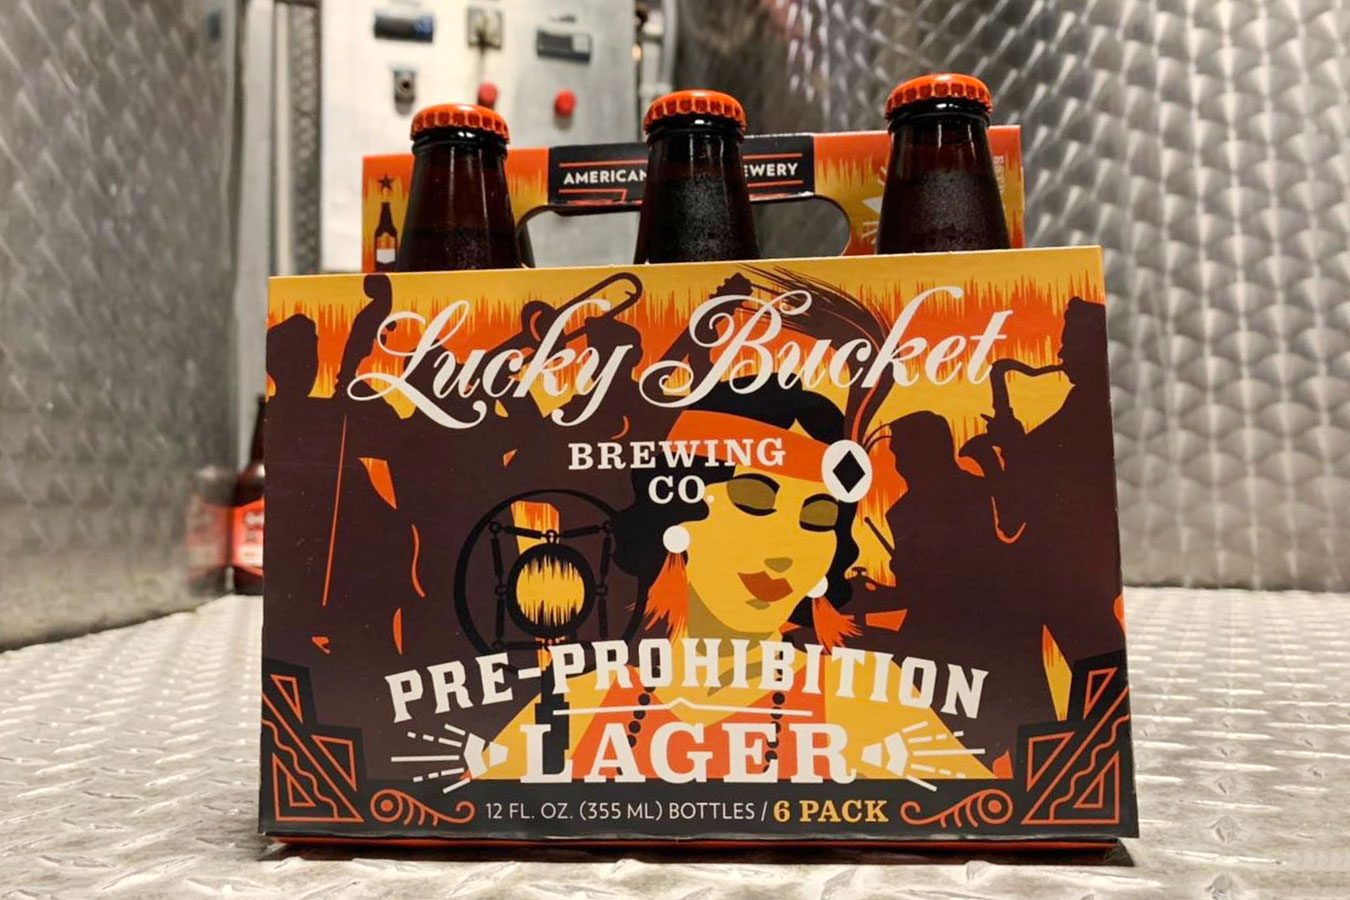 Rd Beer Nebraska Pre Prohibition Lager Via Luckybucket Facebook.com